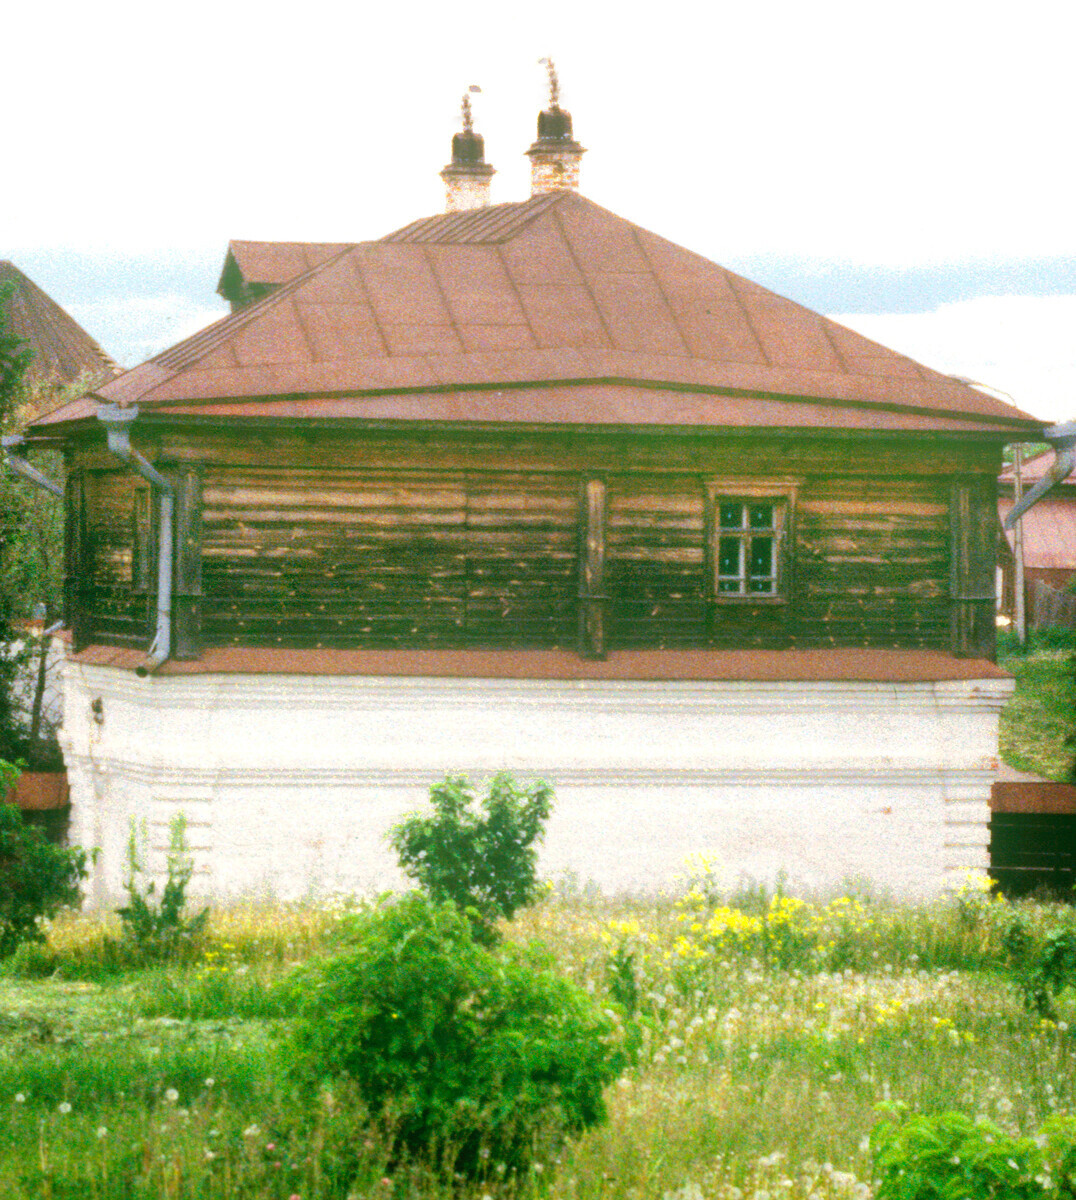 Rumah keluarga pedagang Agapov. Struktur kayu yang dibangun di atas bata tingkat bawah (abad ke-18). Bagian dari Museum Suzdal, rumah itu berada di situs aslinya. 16 Mei 1990